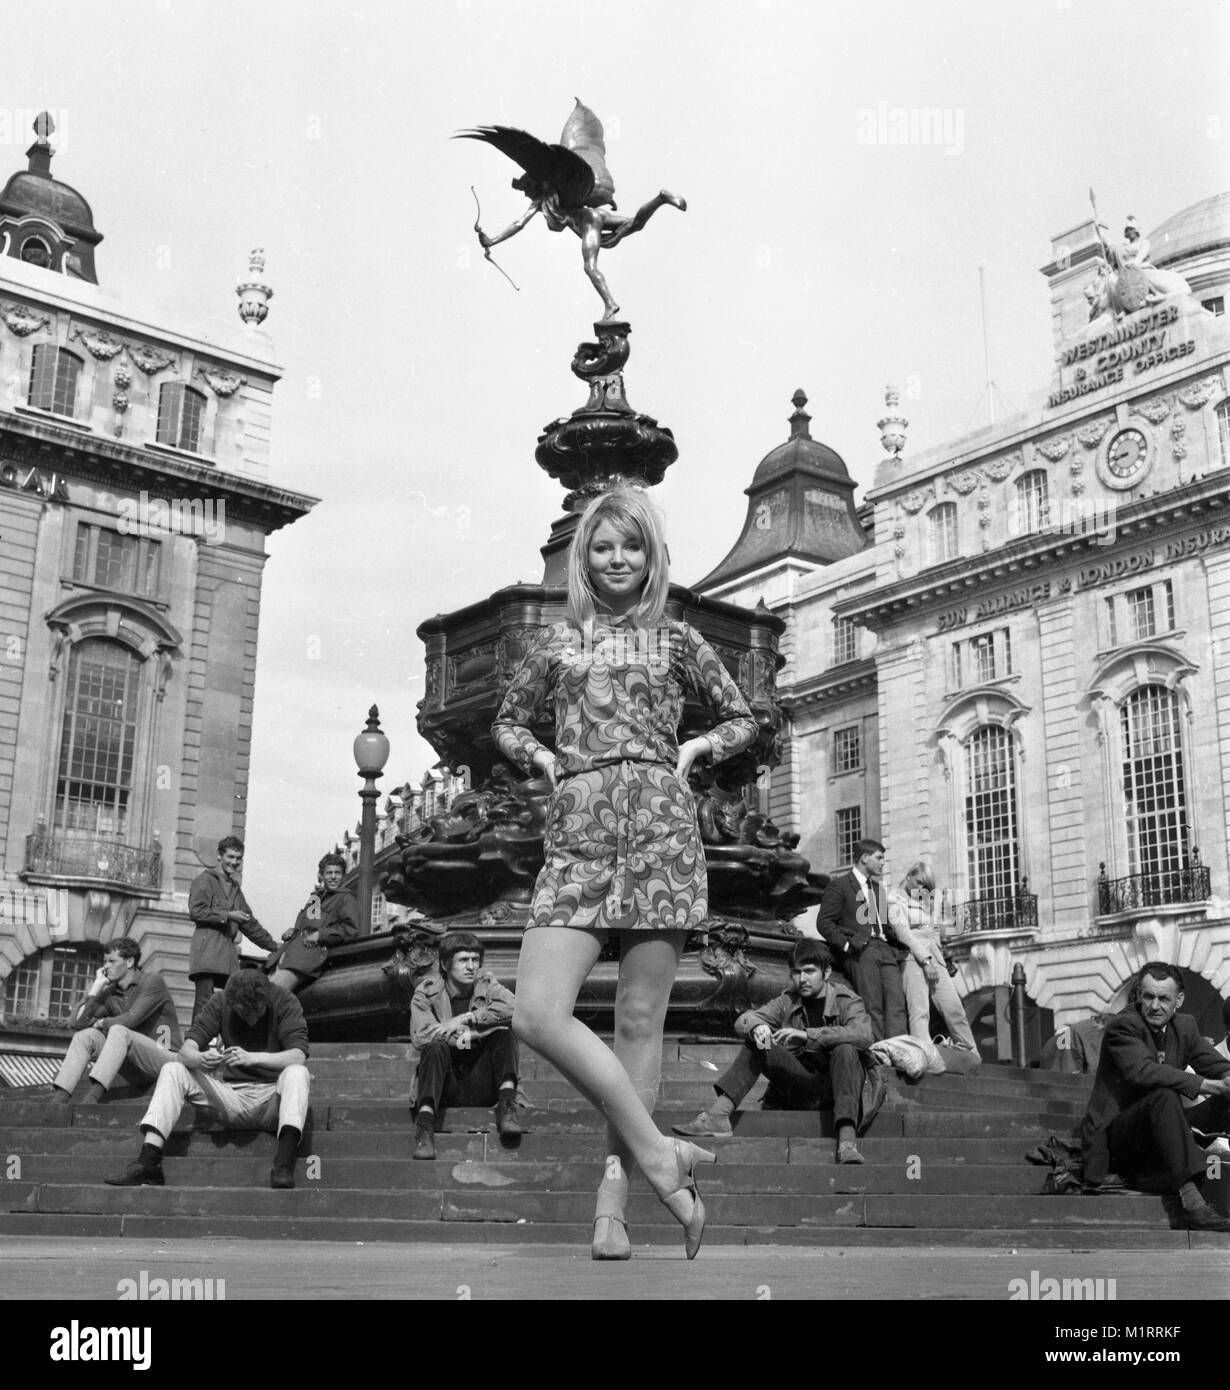 Un modèle pose dans une robe à l'extérieur de Londres Piccadilly, près de la statue d'Eros en vers 1968, portant une robe colorée. Photo par Tony Henshaw Banque D'Images